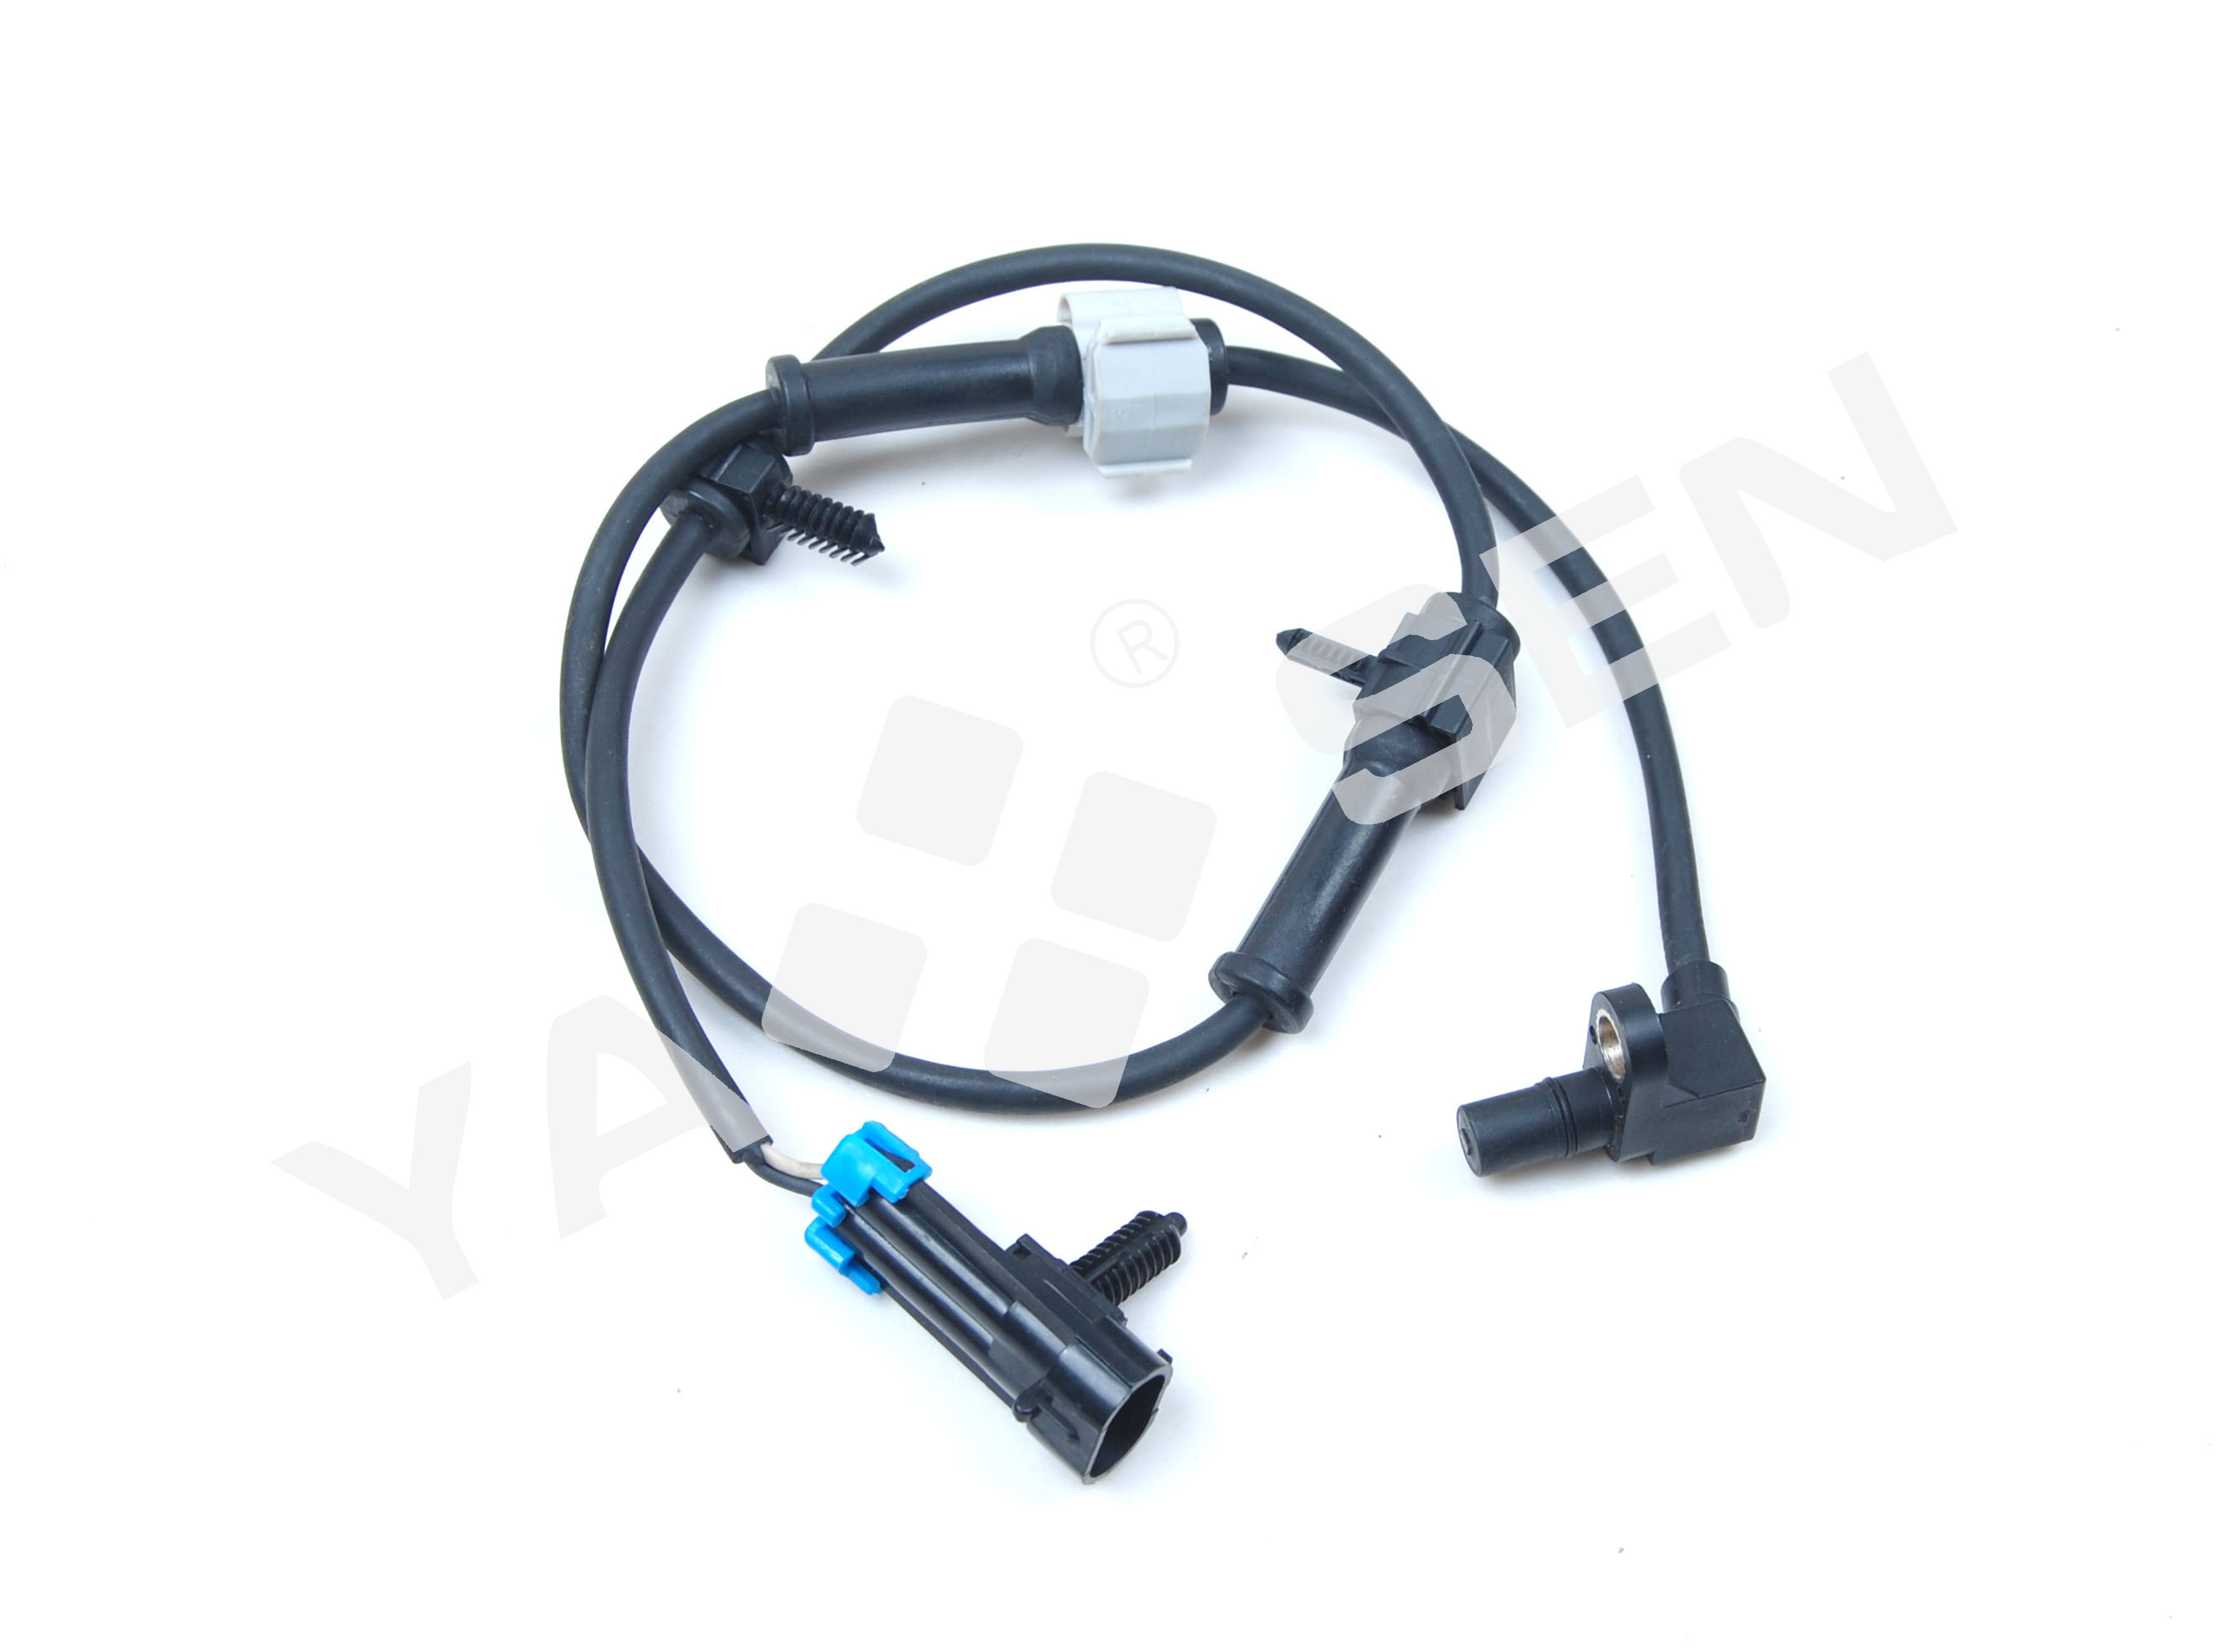 ABS Wheel Speed Sensor for FORD/CHEVROLET 7300361 92115772 FW152 HA590006 H513217 513217 BR930373 19200553-101 19200553-102 FW92